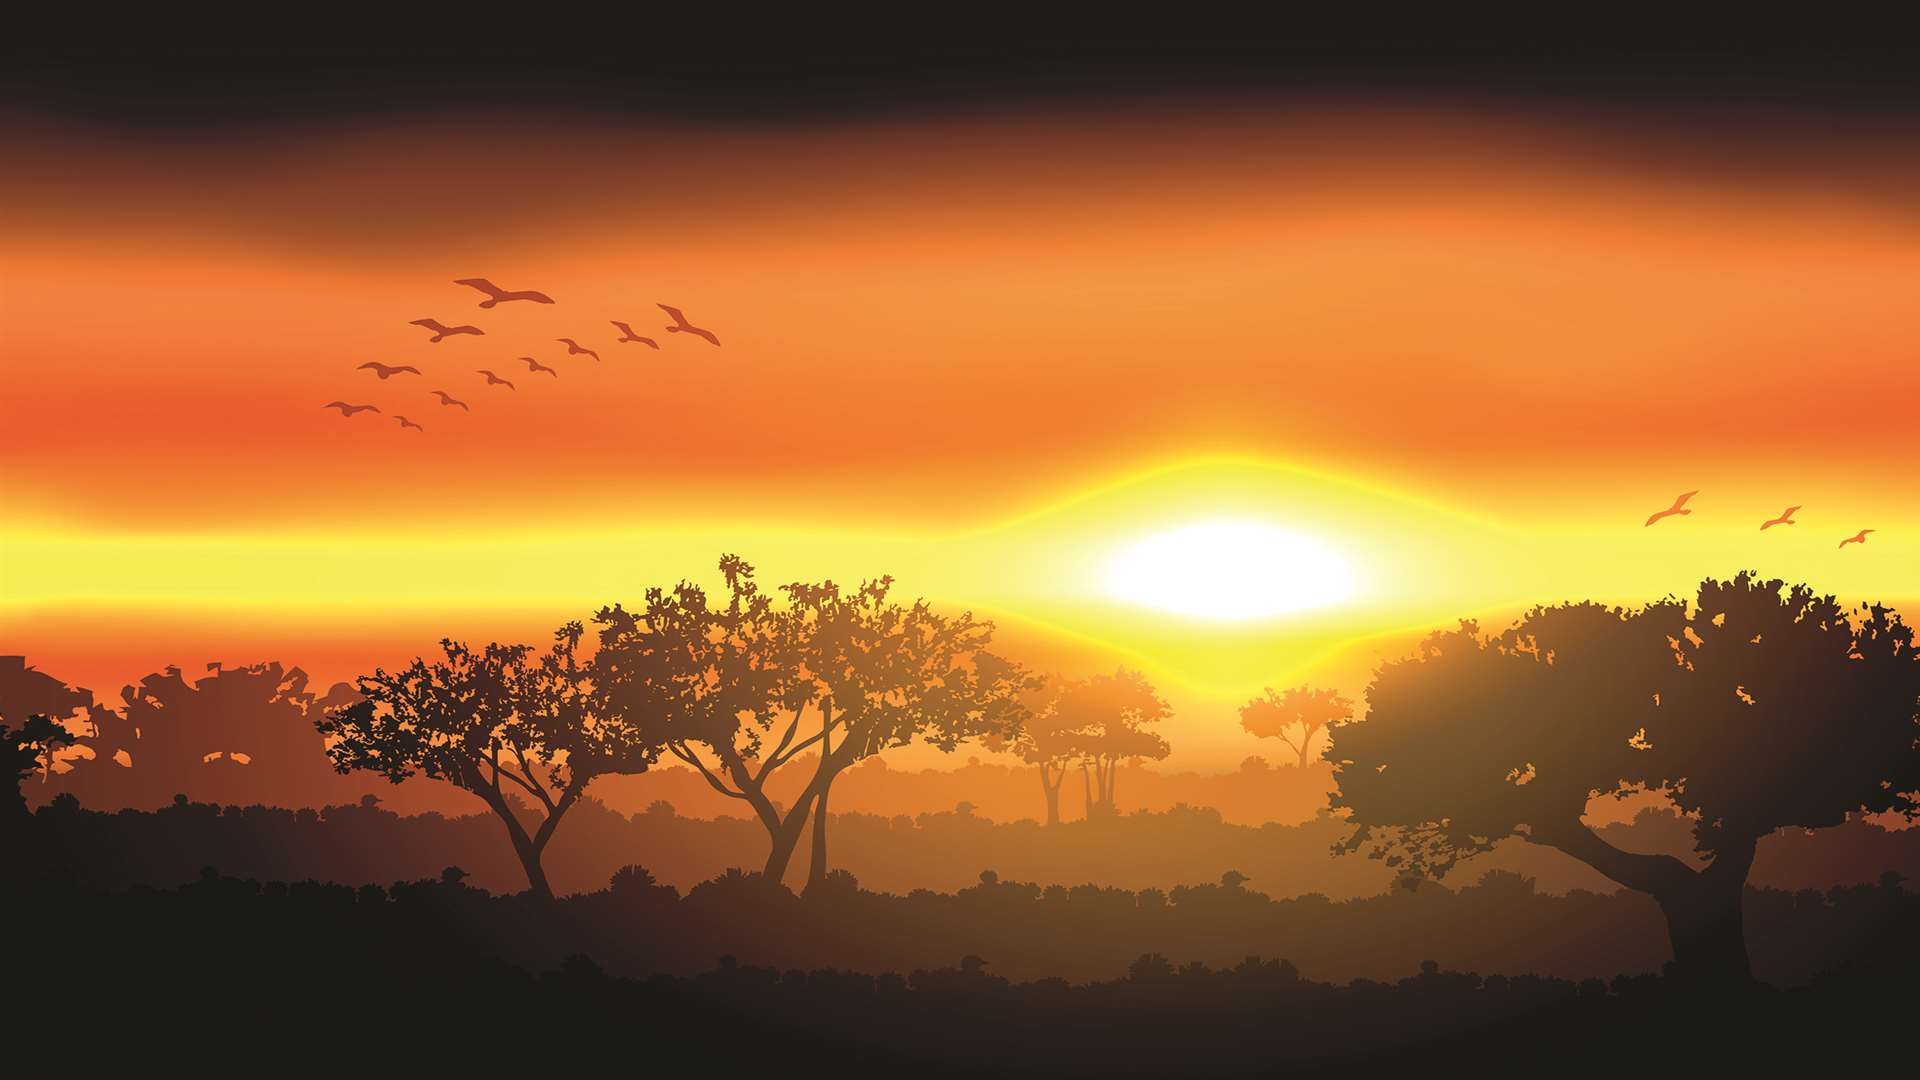 A Pinewood sunset